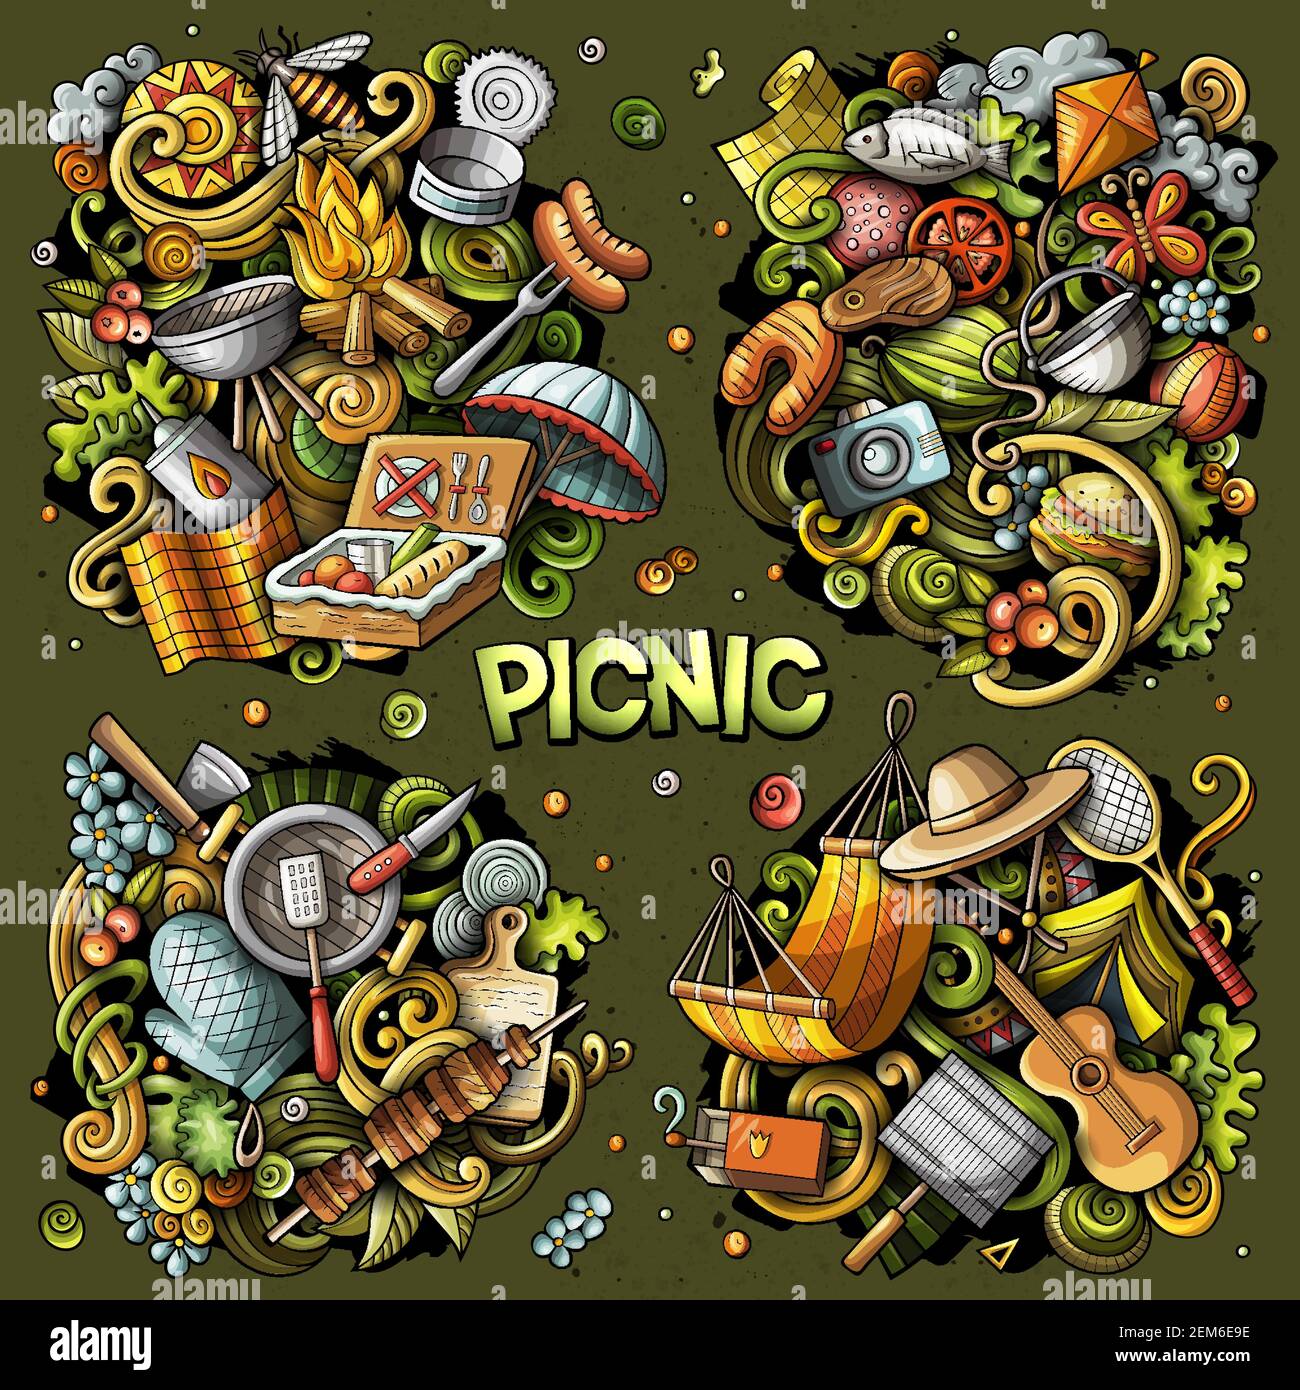 Picknick Cartoon Vektor Doodle Designs Set. Farbenfrohe, detailreiche Kompositionen mit vielen Lebensmitteln und Naturobjekten und Symbolen. Alle Elemente sind getrennt Stock Vektor